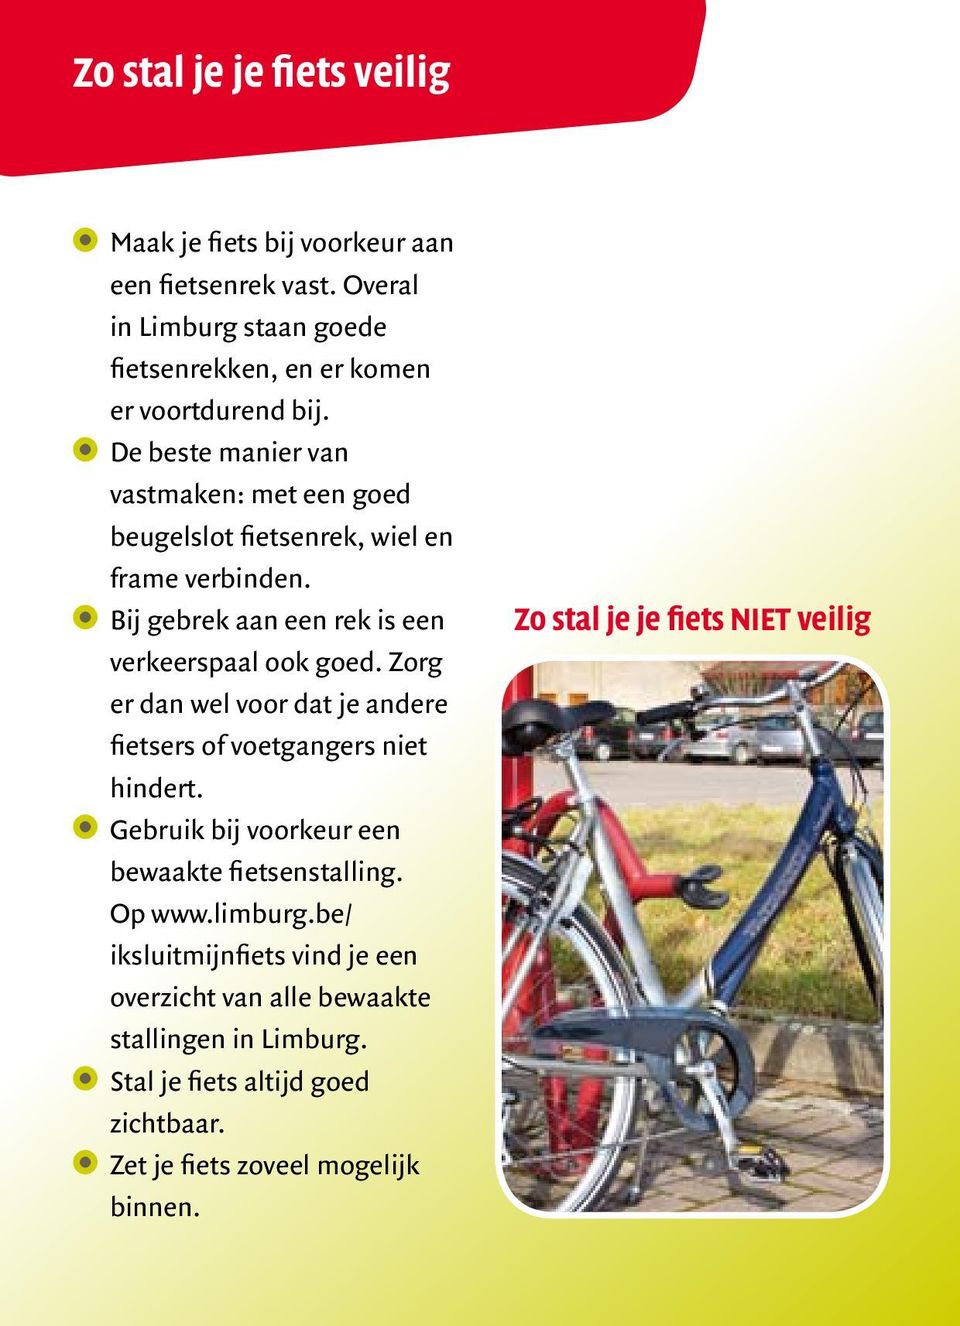 Zorg er dan wel voor dat je andere fietsers of voetgangers niet hindert. Gebruik bij voorkeur een bewaakte fietsenstalling. Op www.limburg.